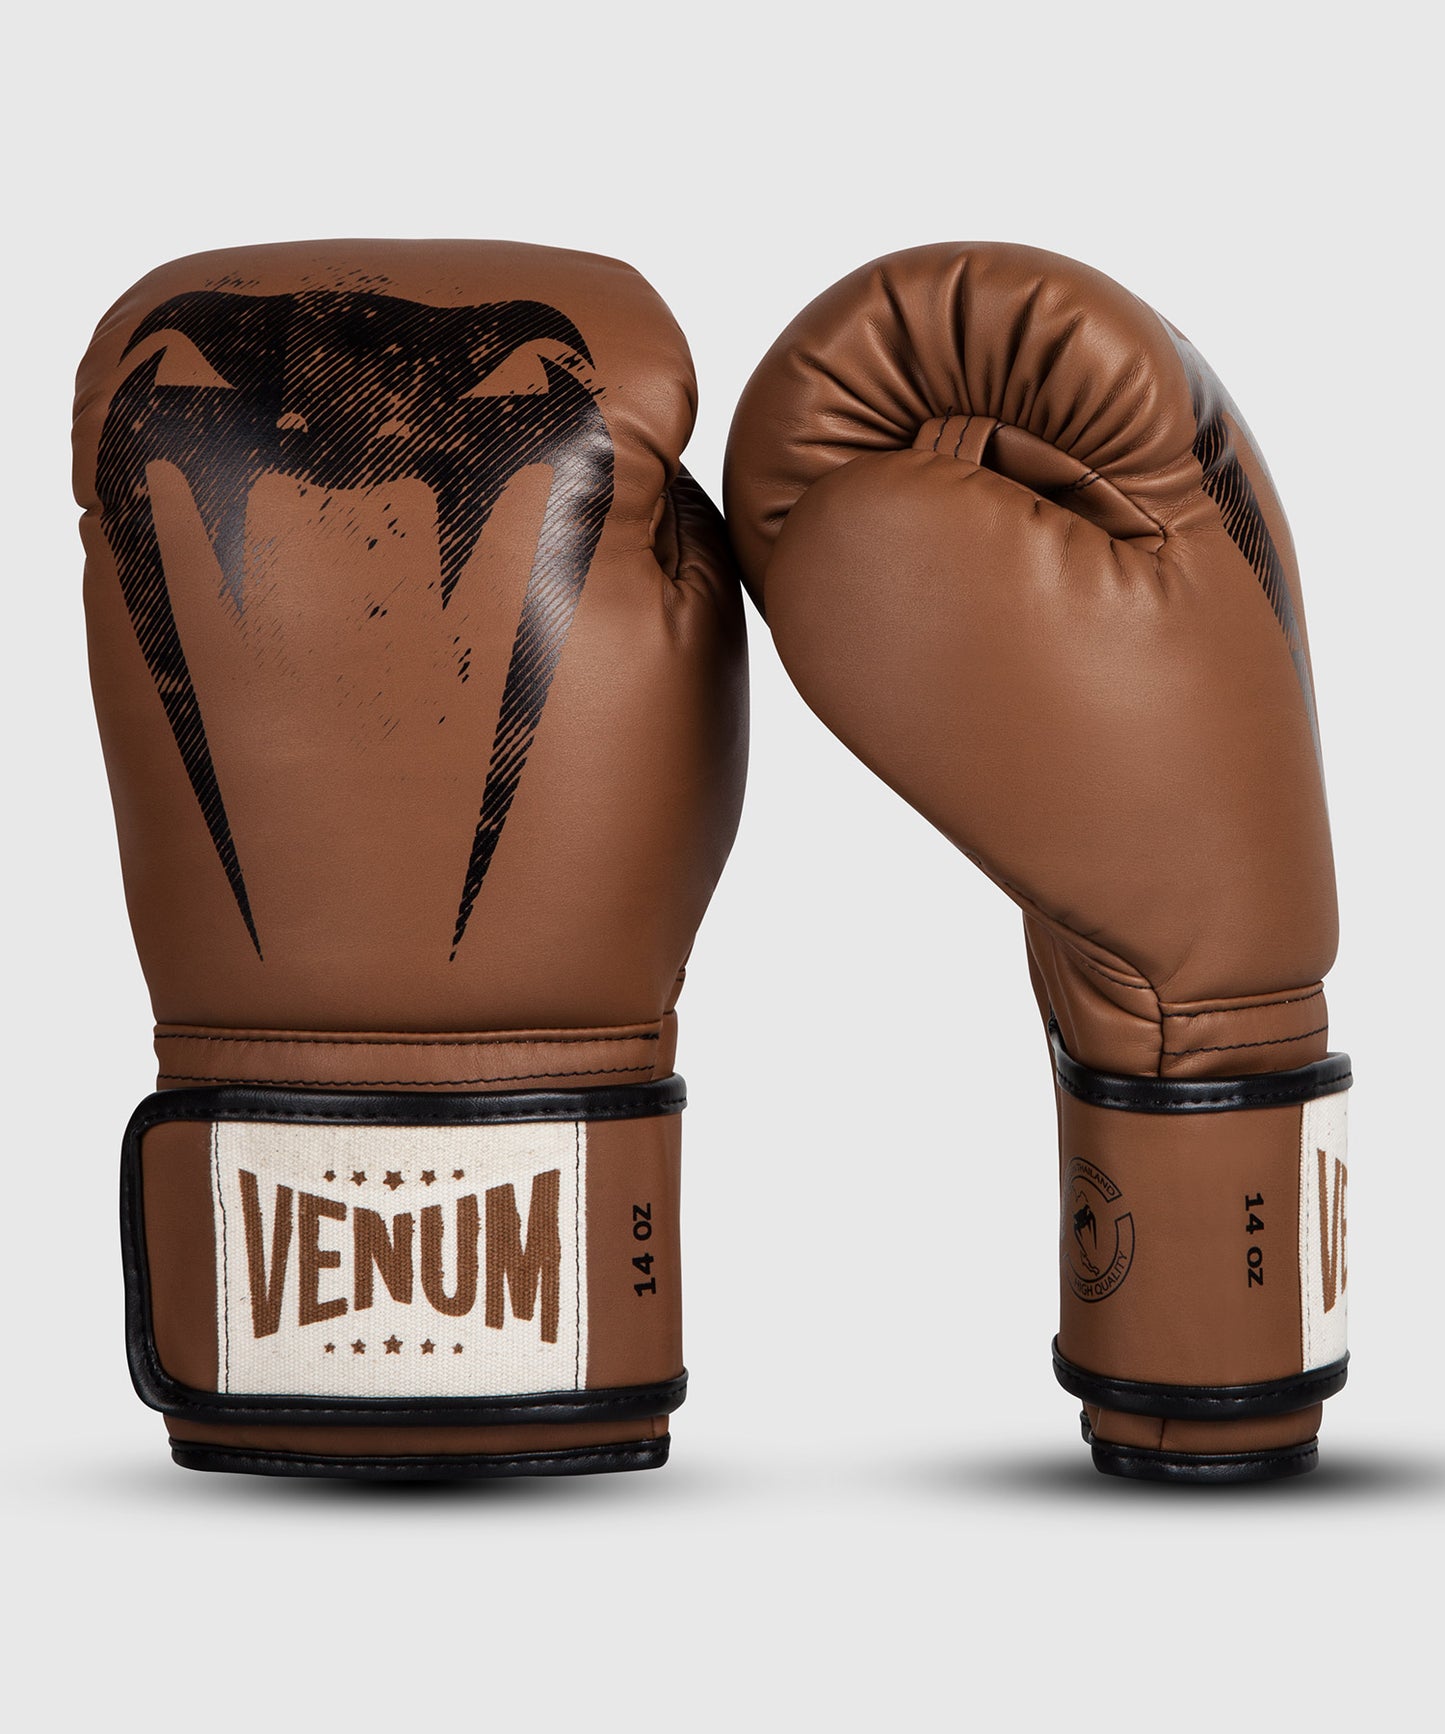 Venum Giant Sparring Boxing Gloves - Brown - Gants de boxe